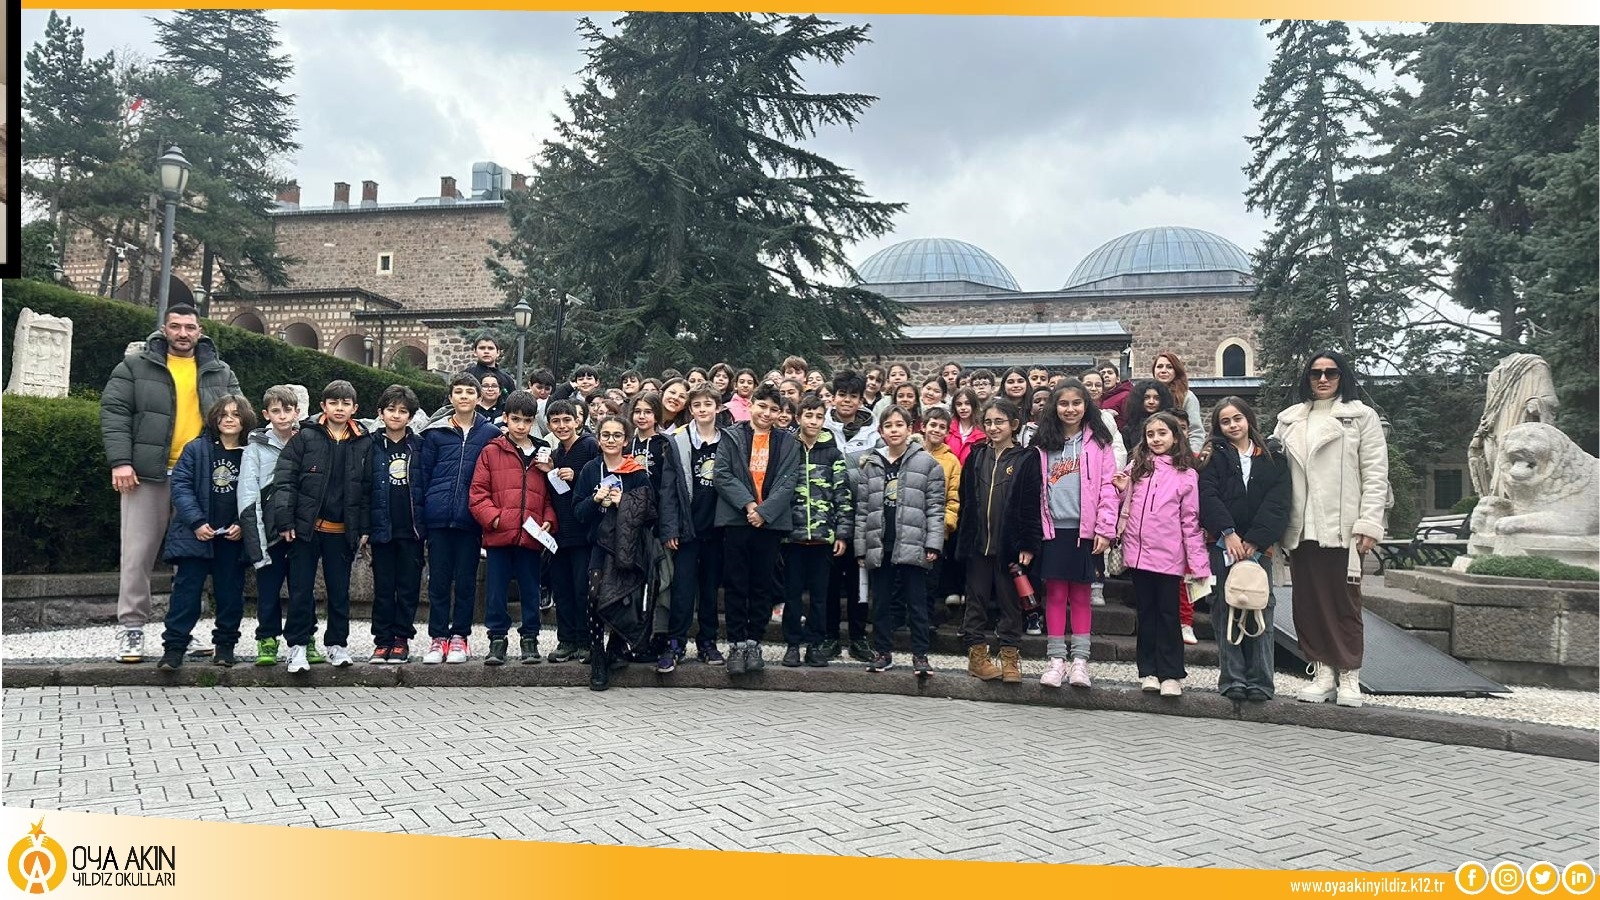 Oya Akın Yıldız Ortaokulu 5. Sınıf Öğrencilerimiz ile Anadolu Medeniyetler Müzesini Ziyaret Ettik